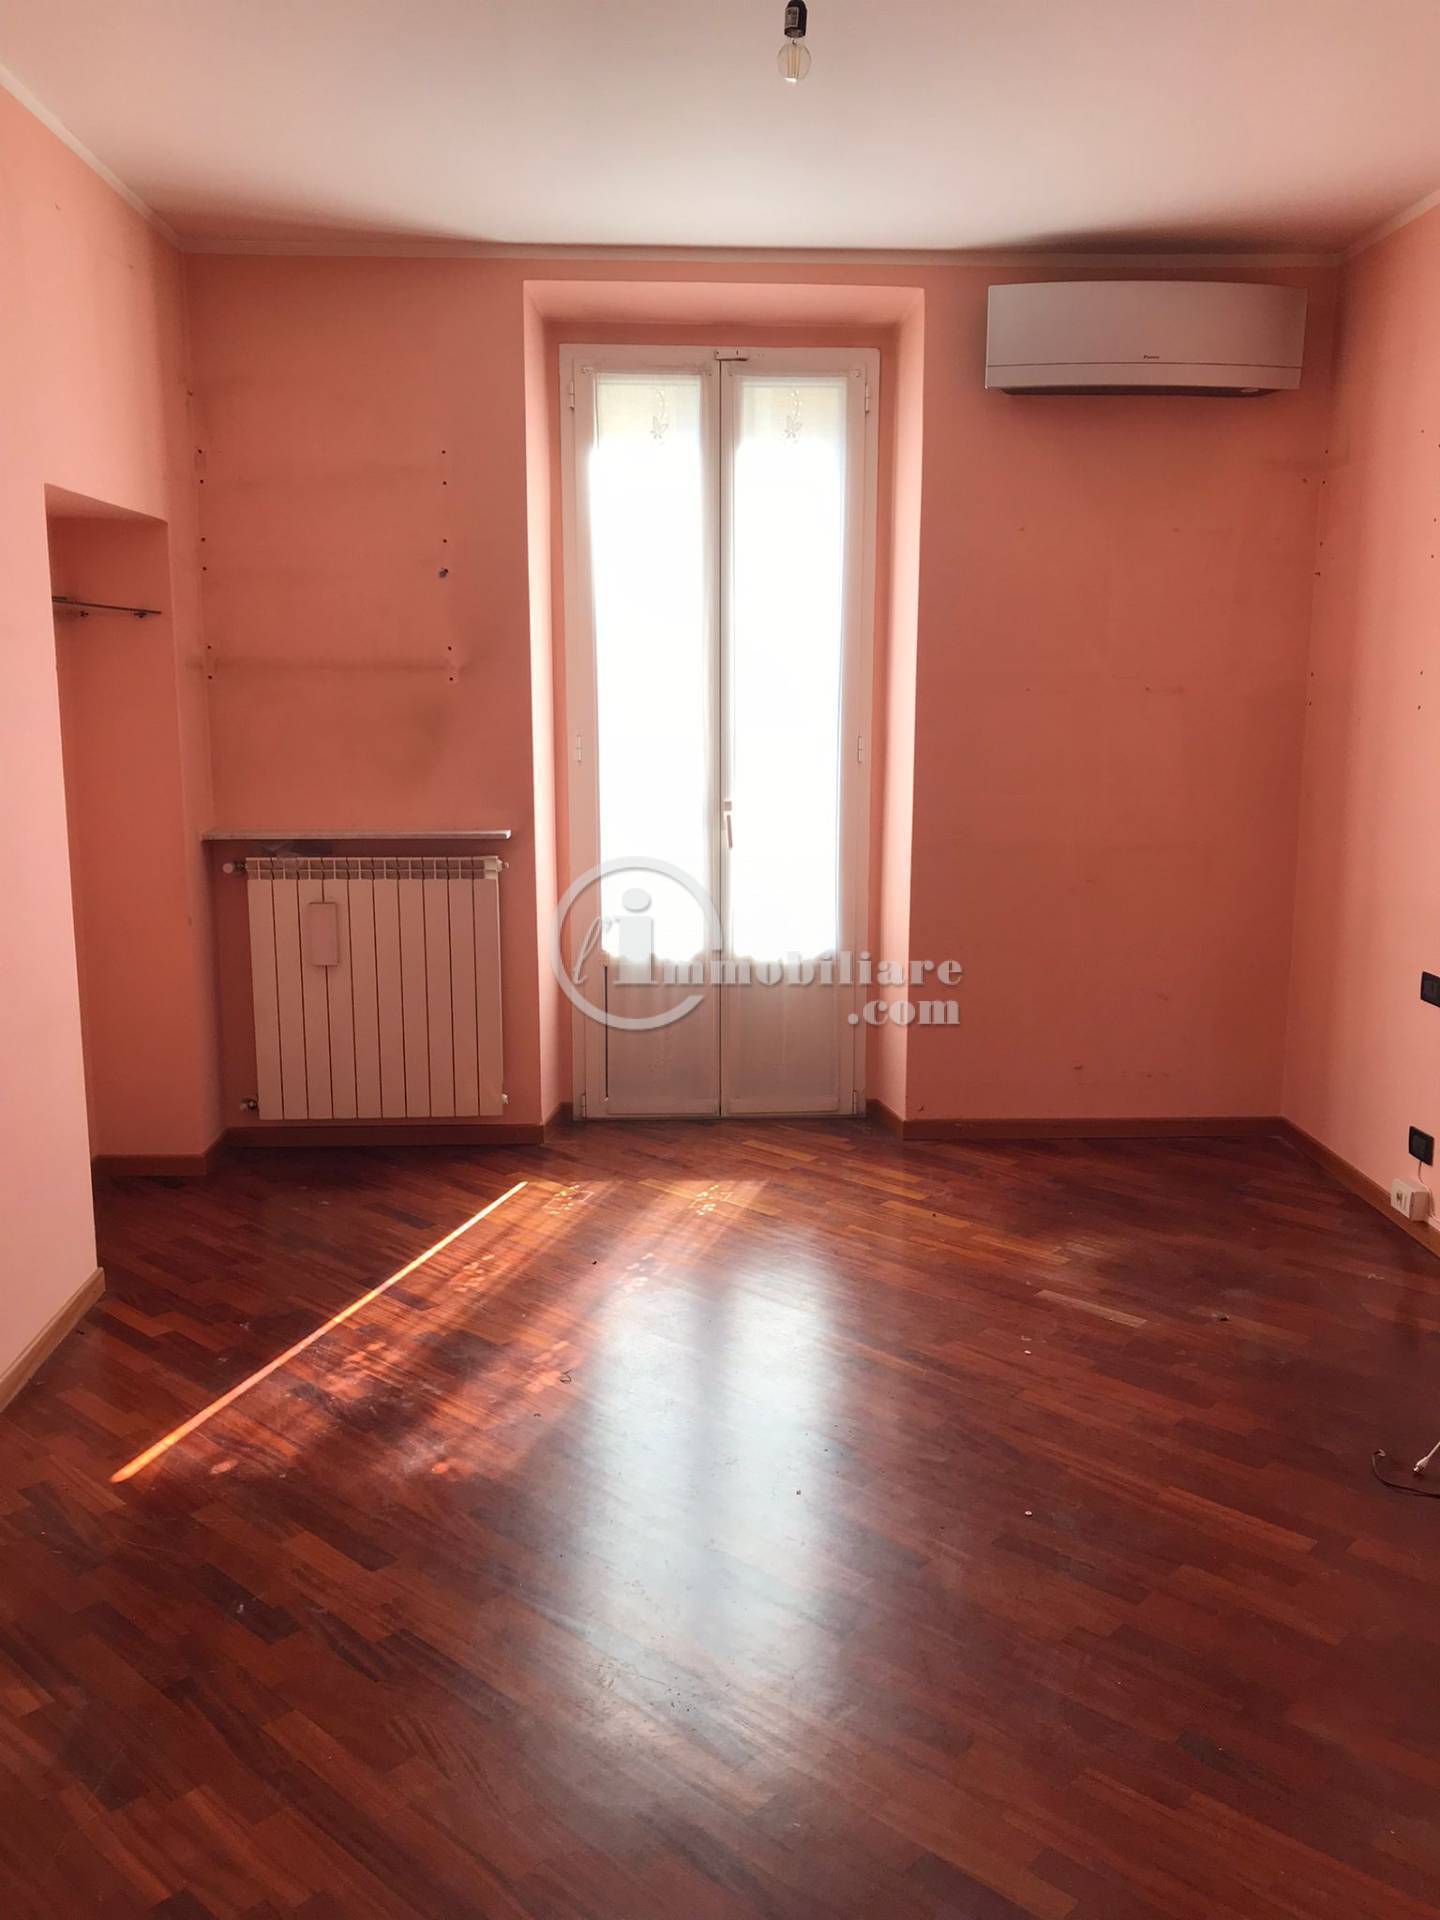 Appartamento in Vendita a Milano: 4 locali, 104 mq - Foto 1